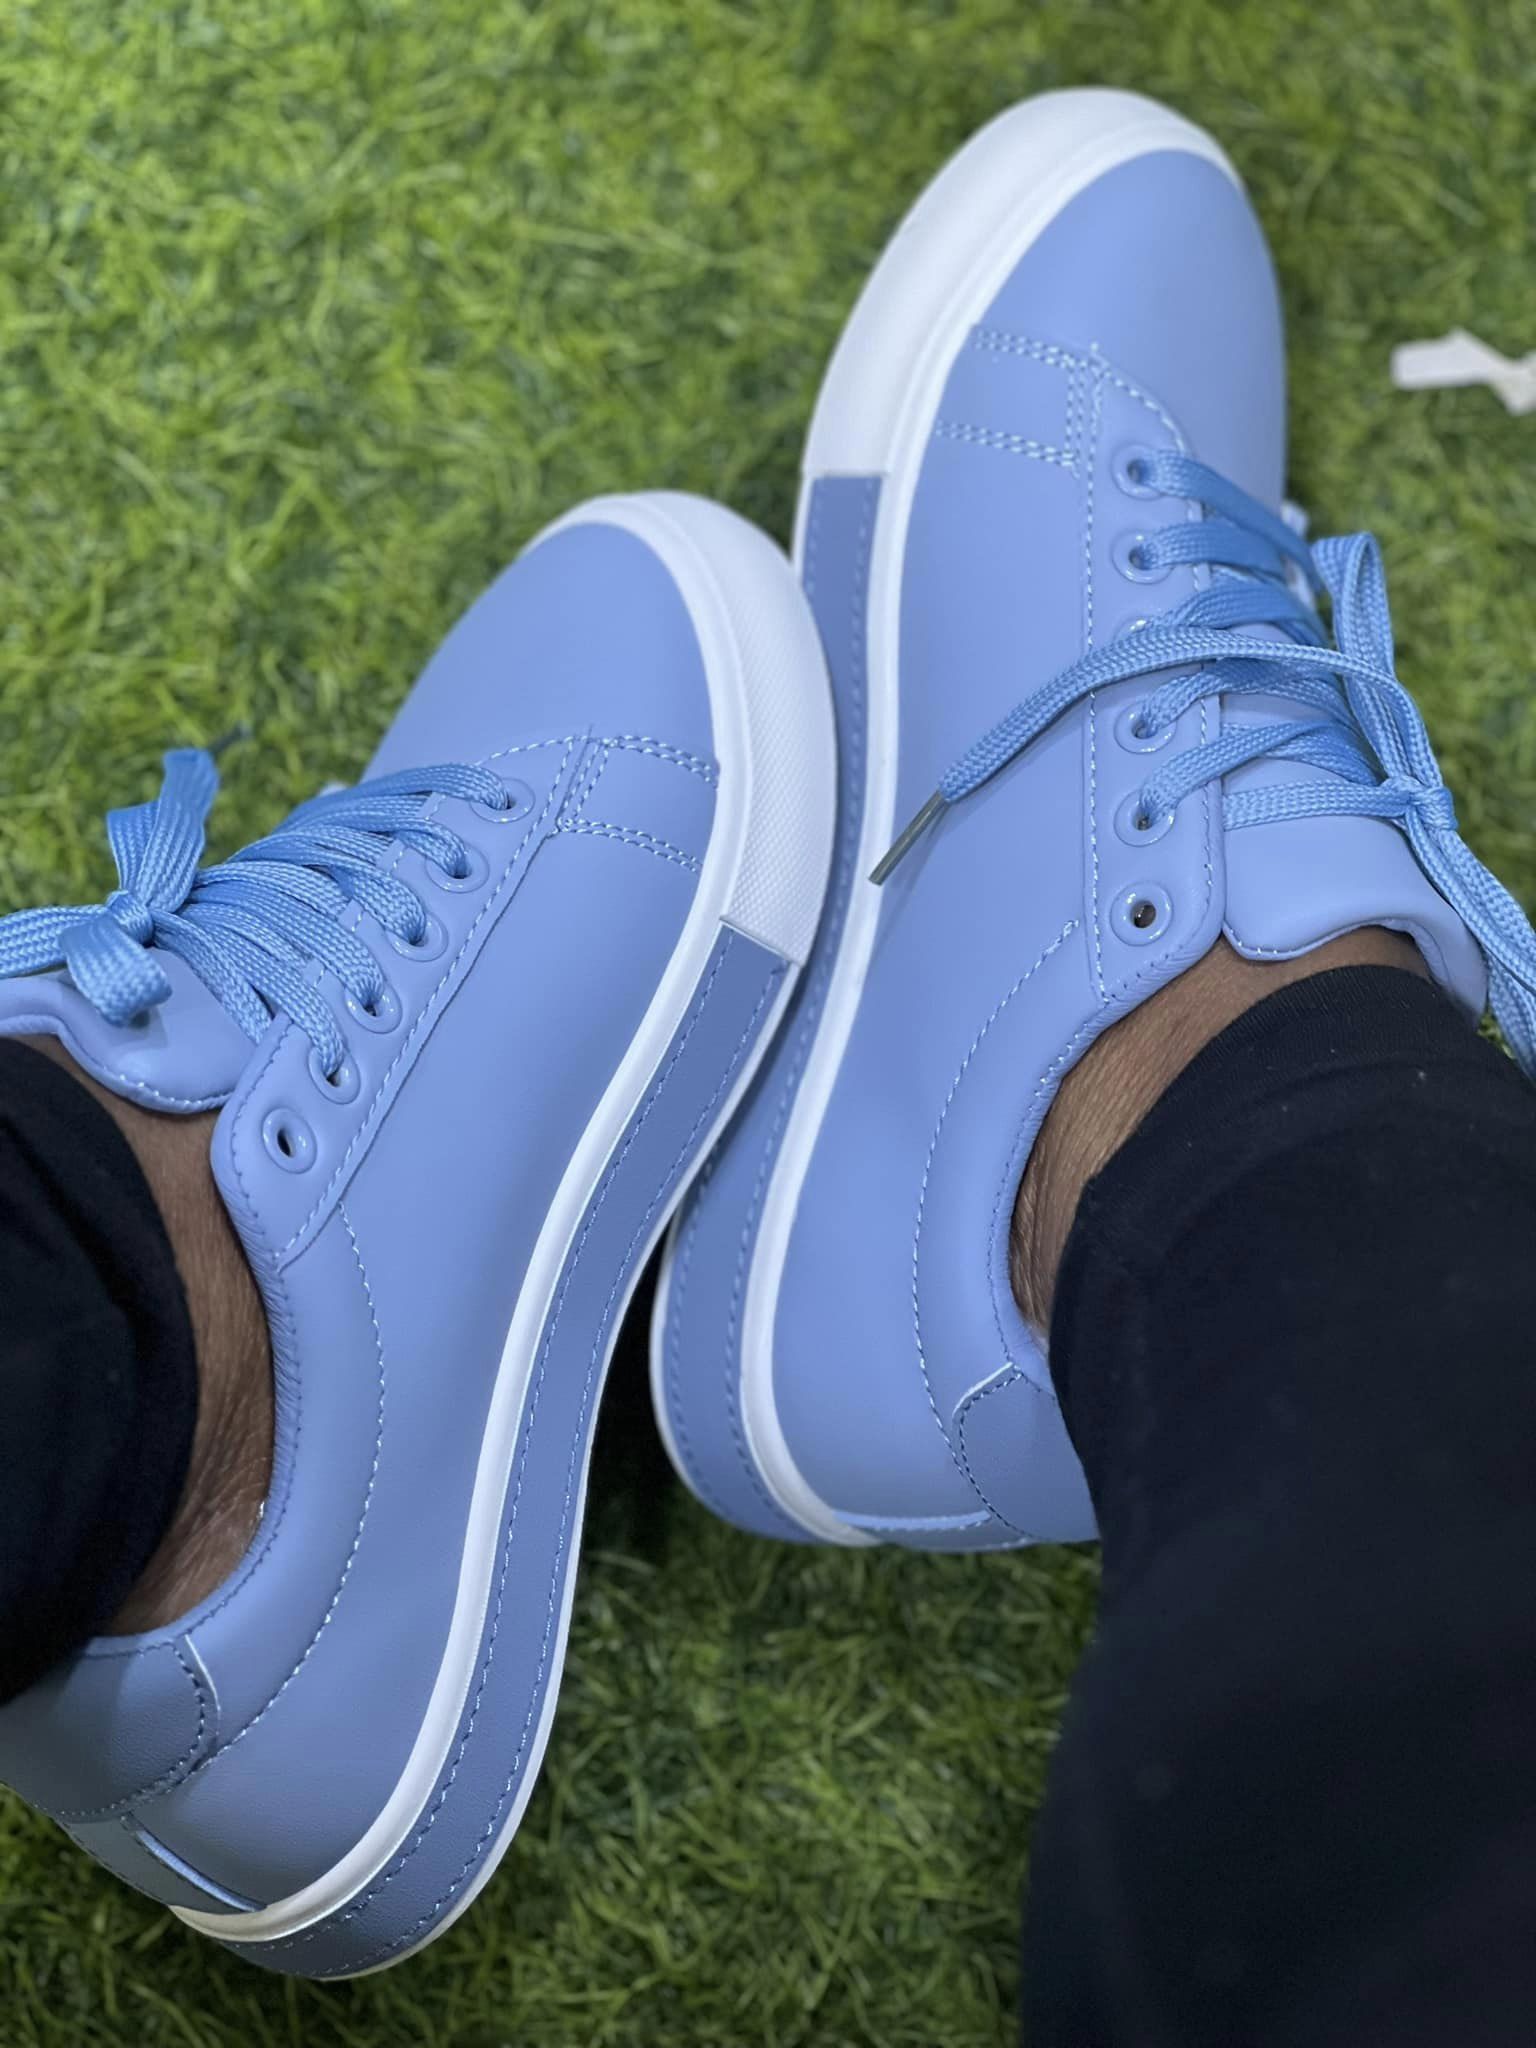 women sky blue sneakers